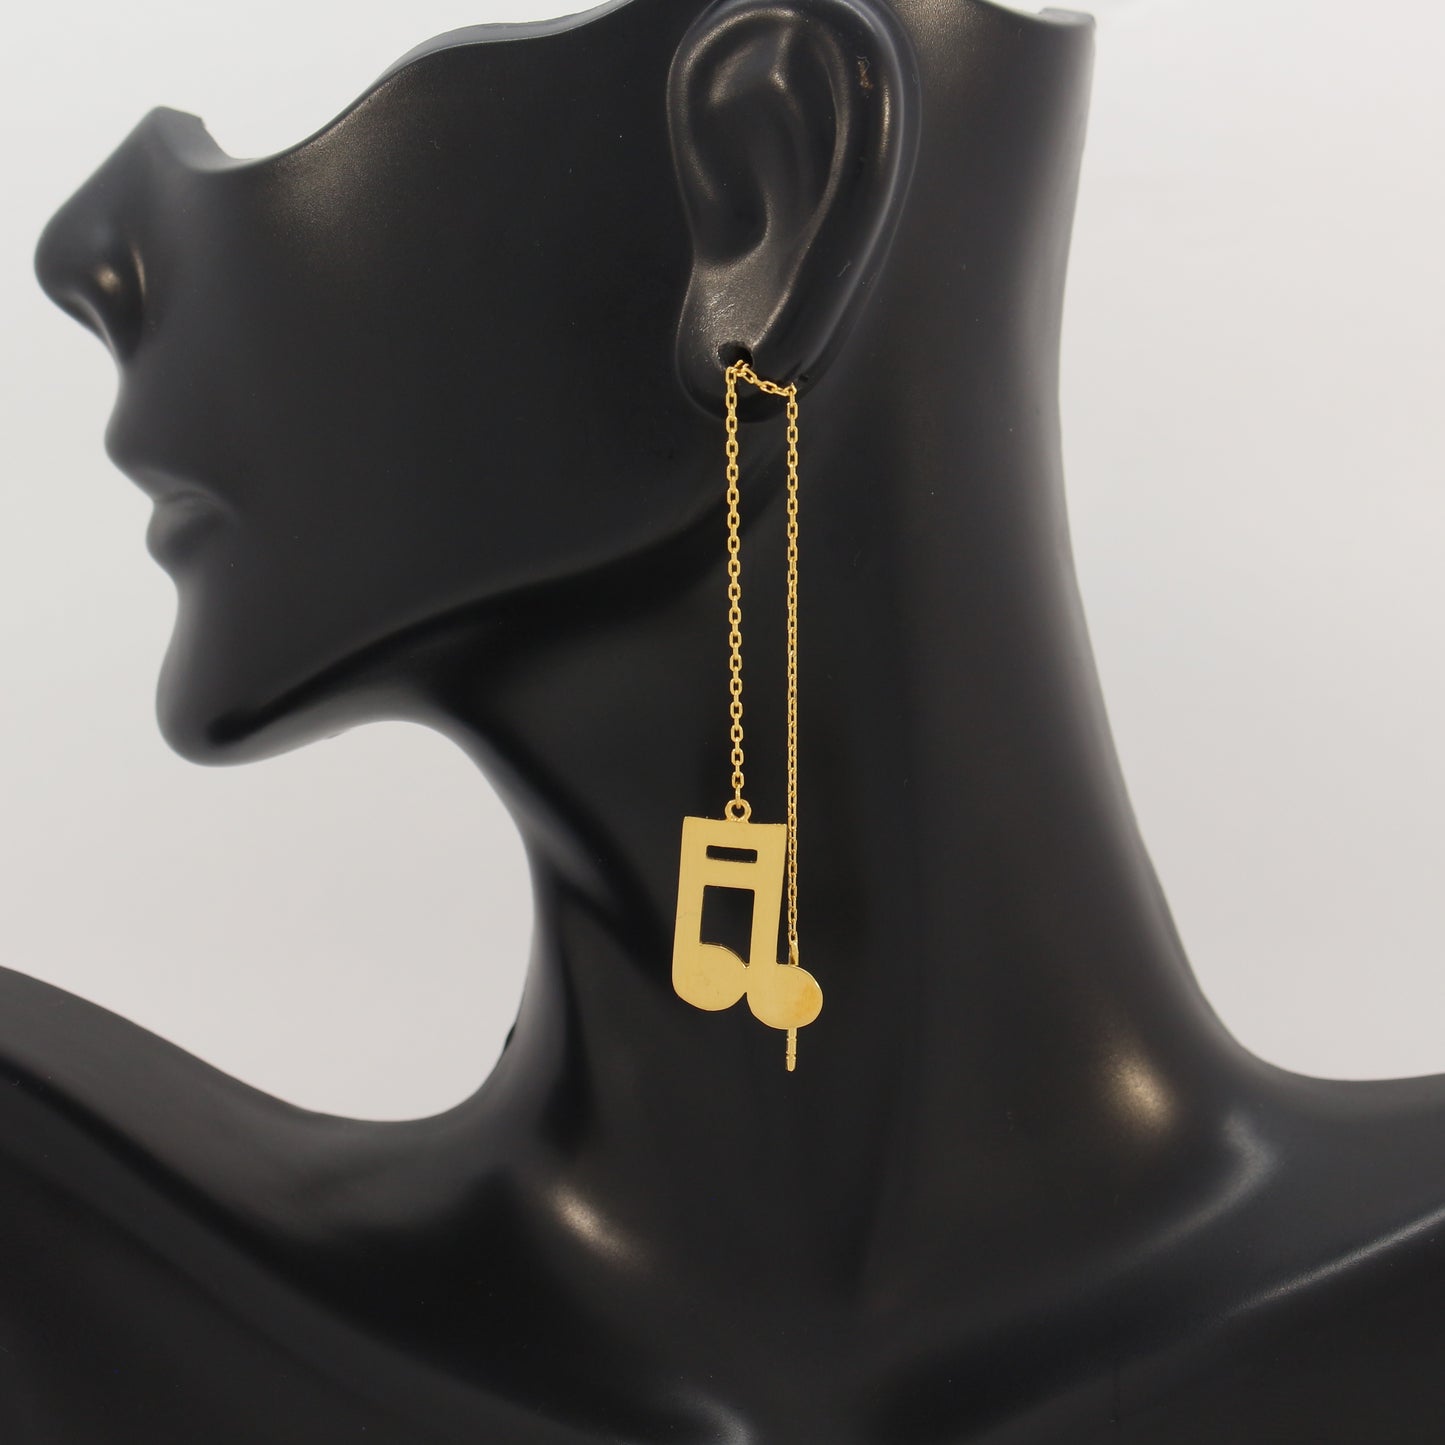 21K Gold Threader Earrings; Musical Notes